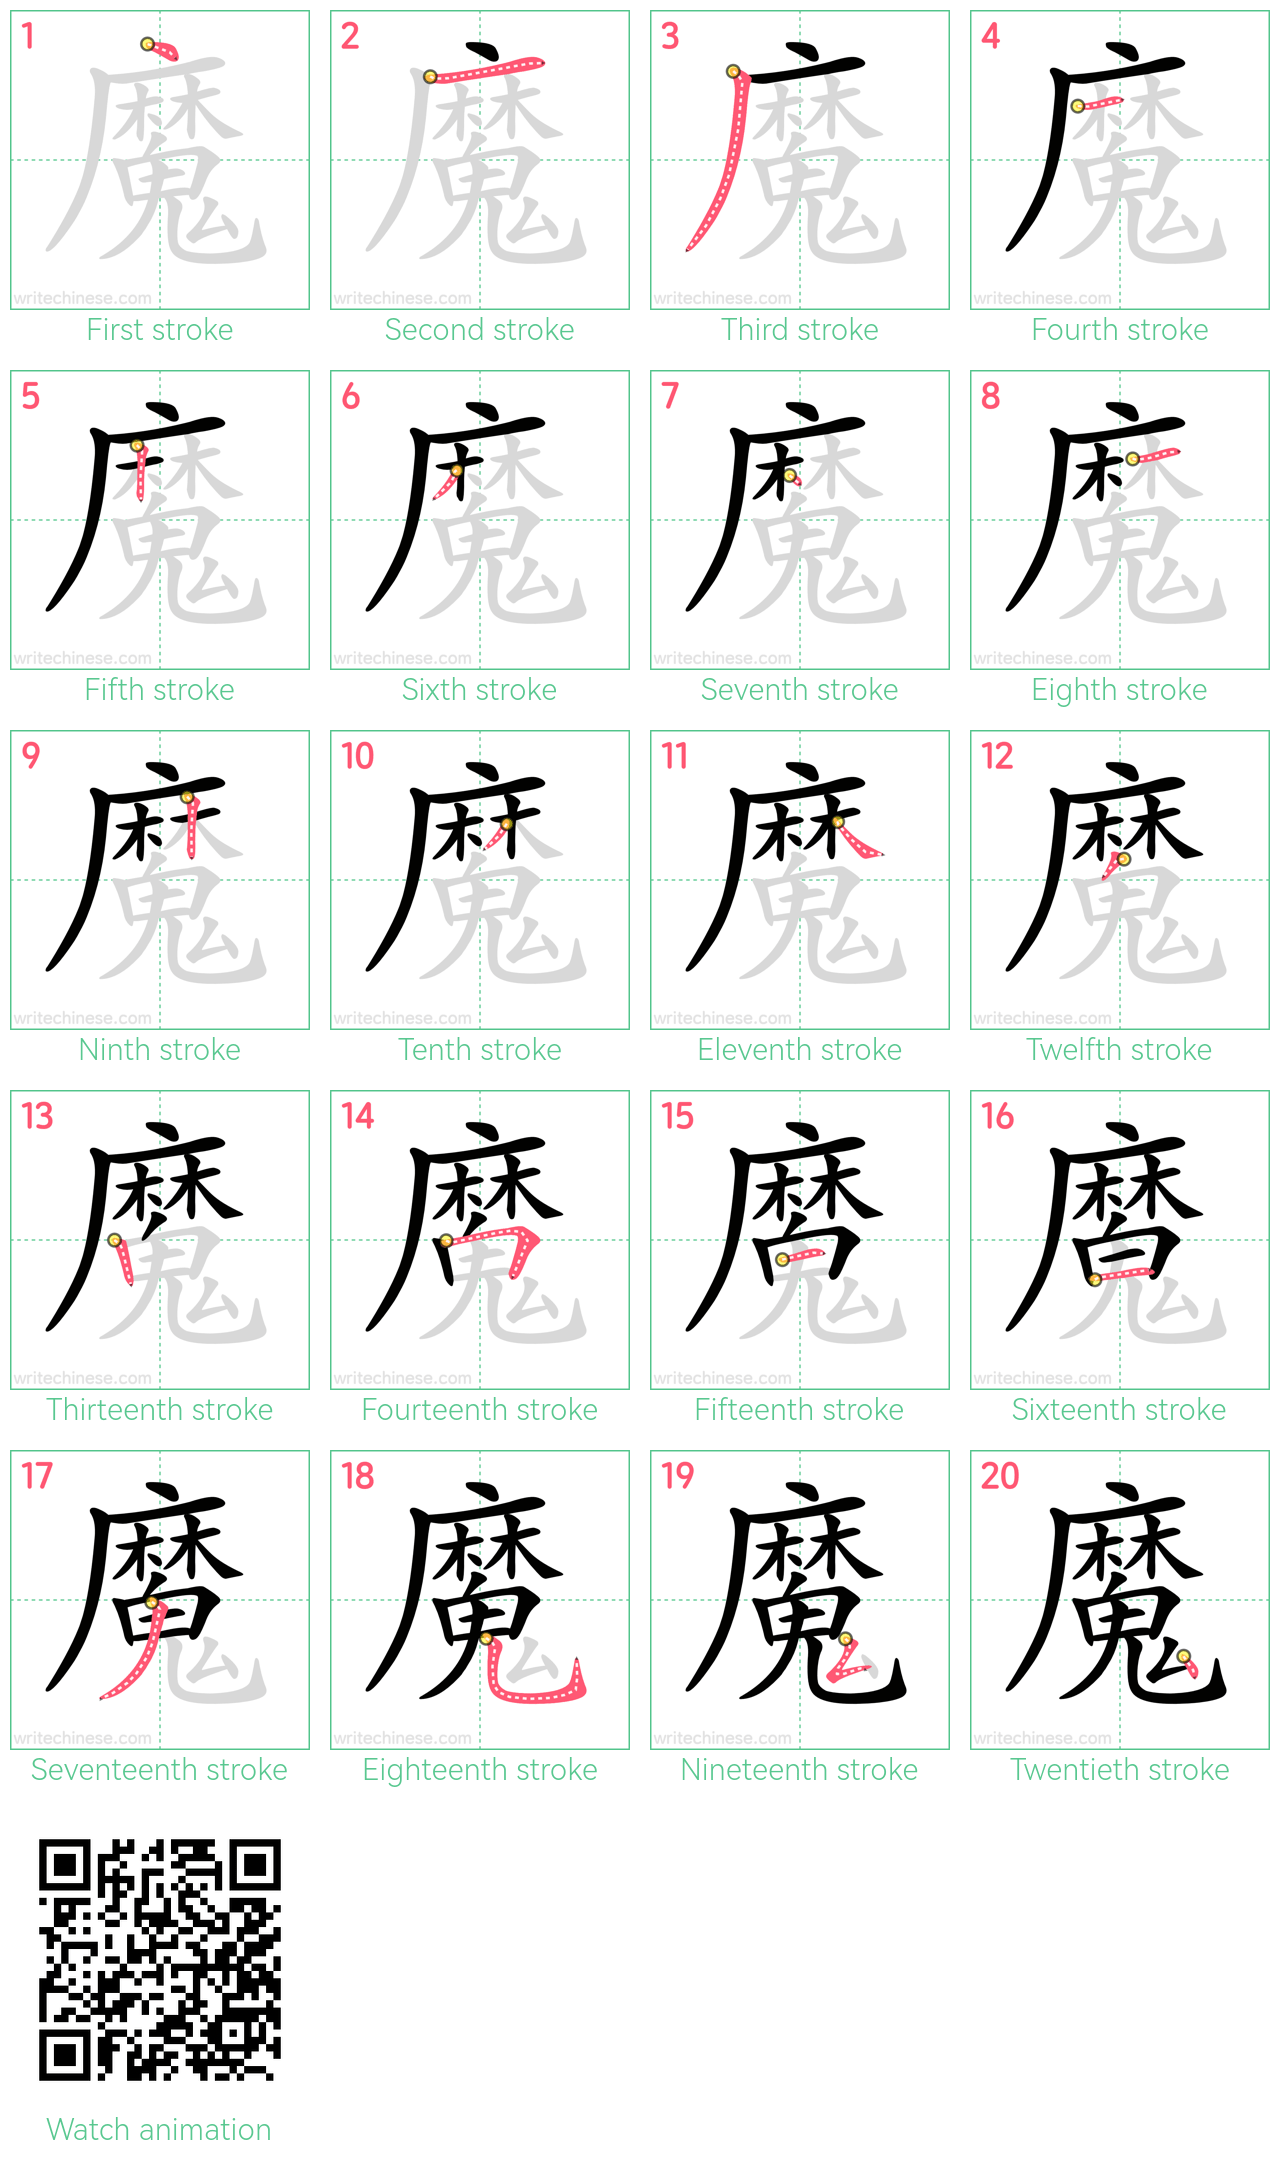 魔 step-by-step stroke order diagrams